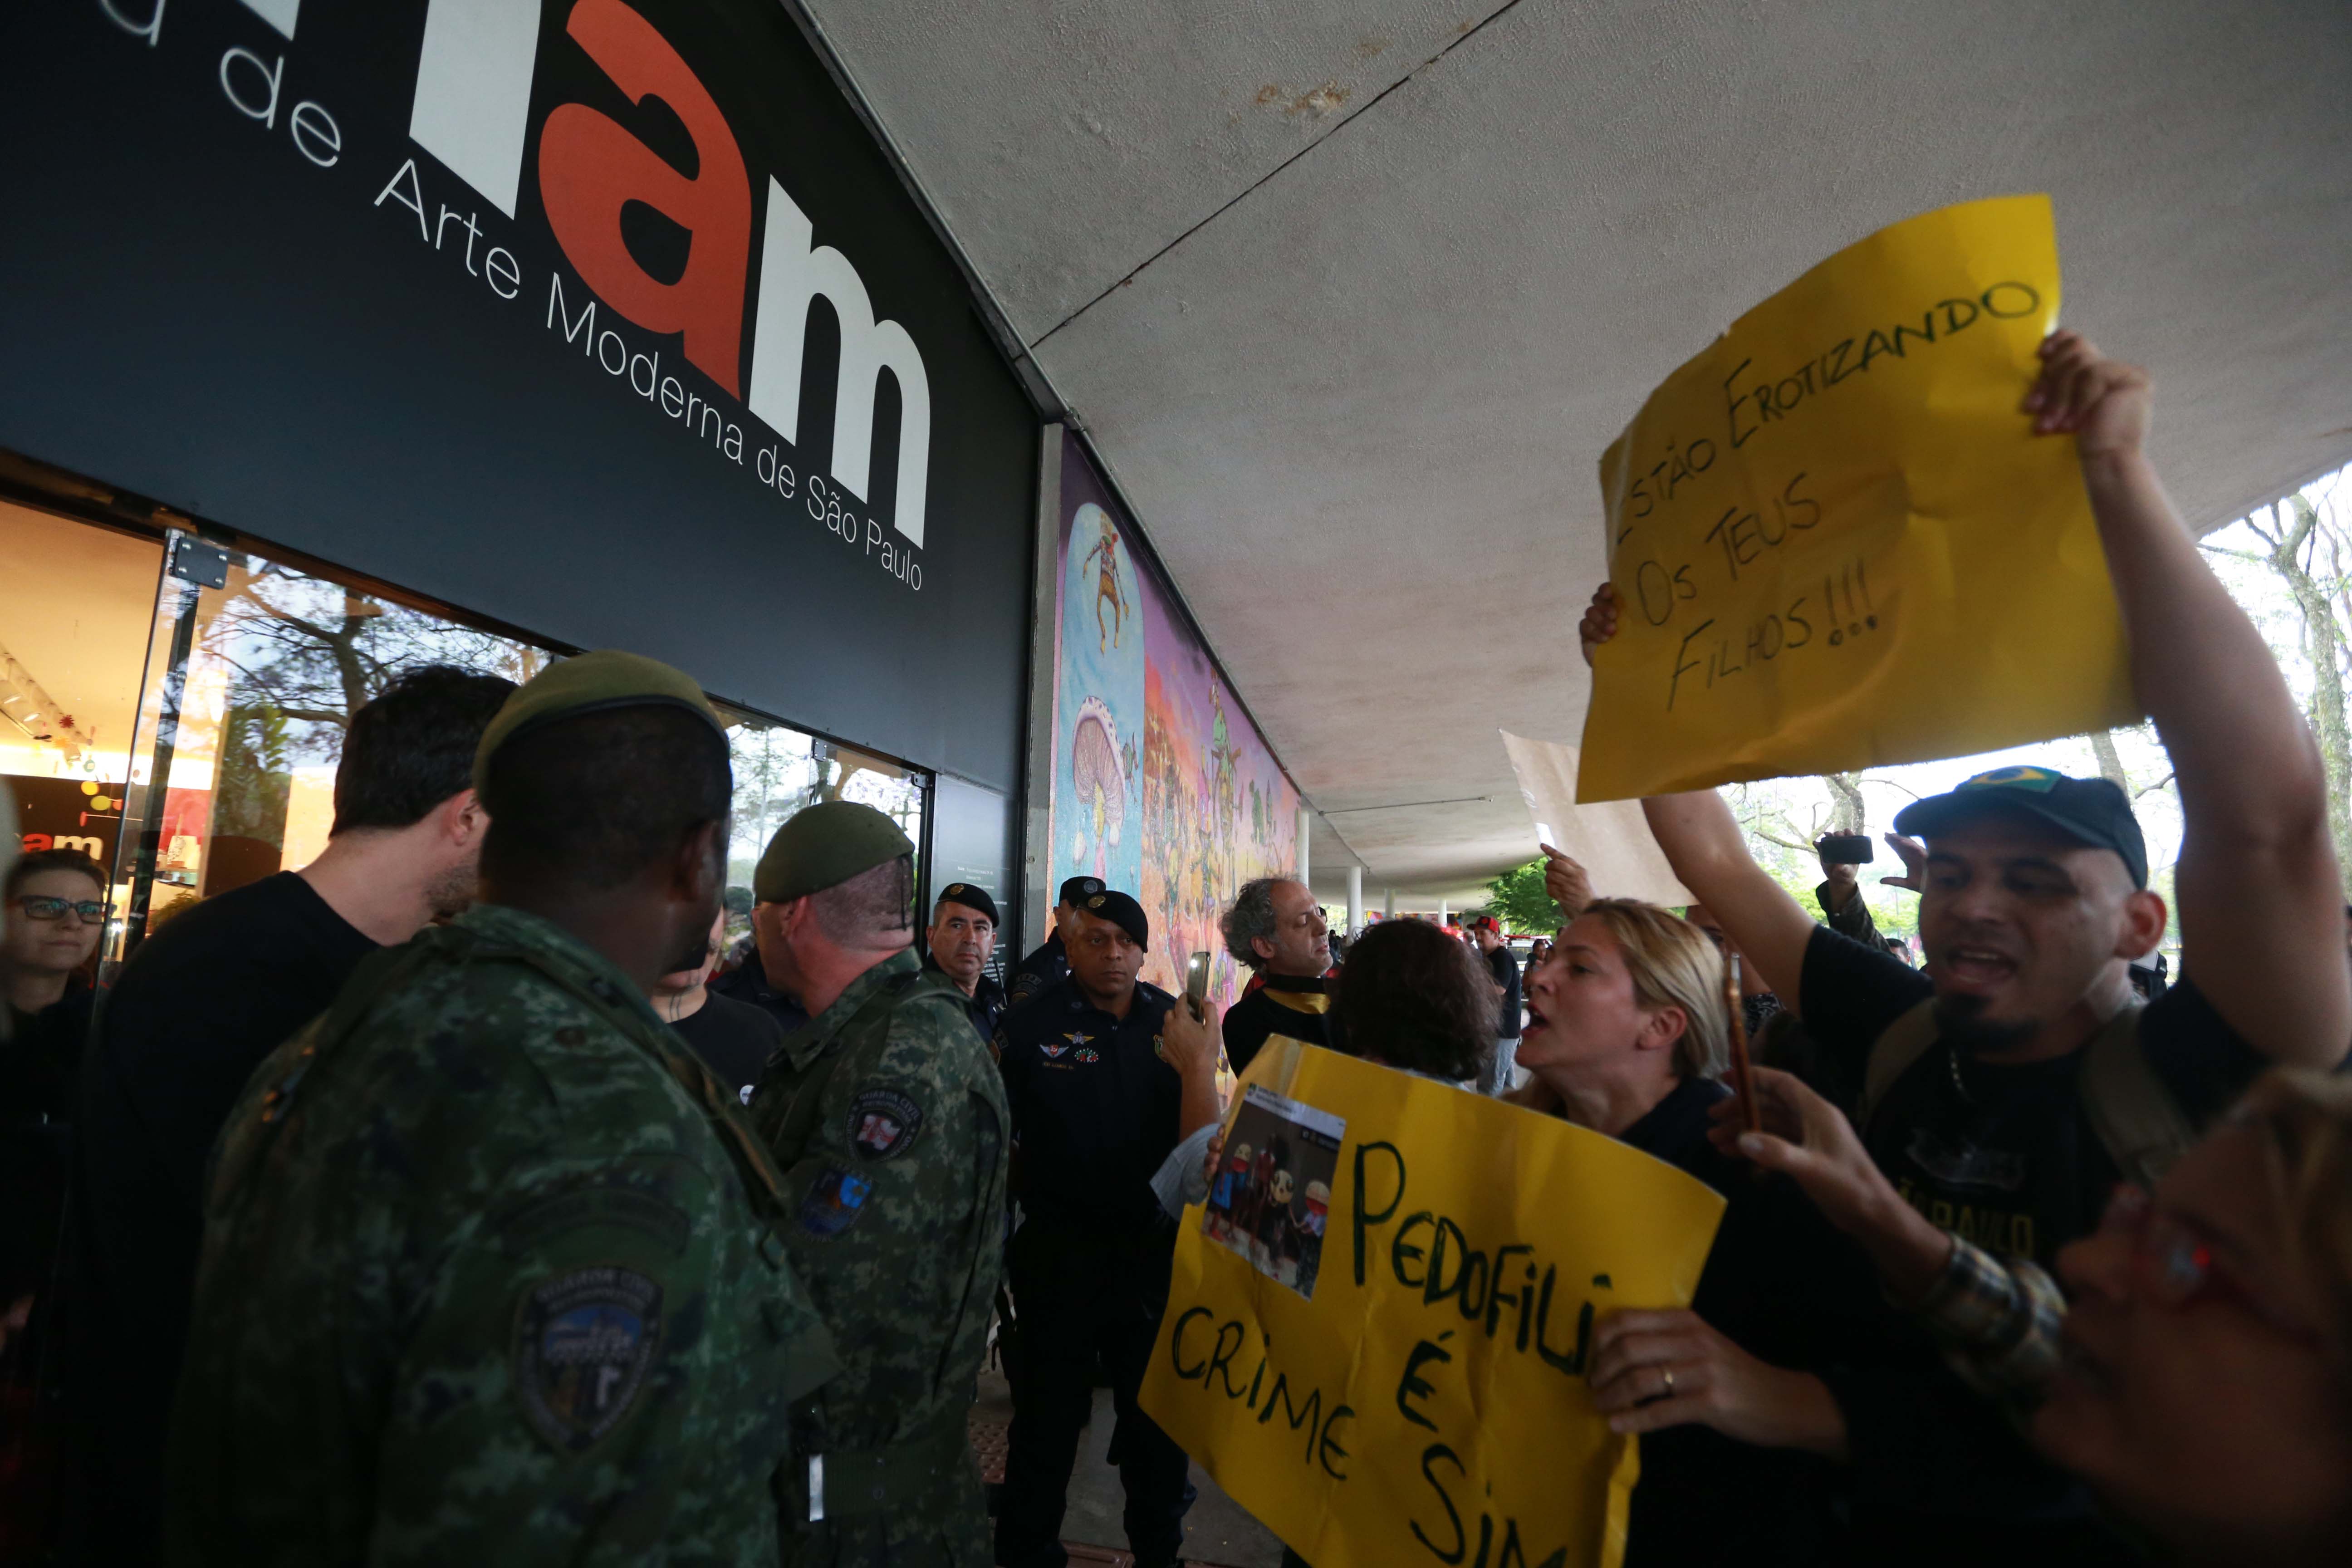 Manifestantes protestam contra performance artística no MAM